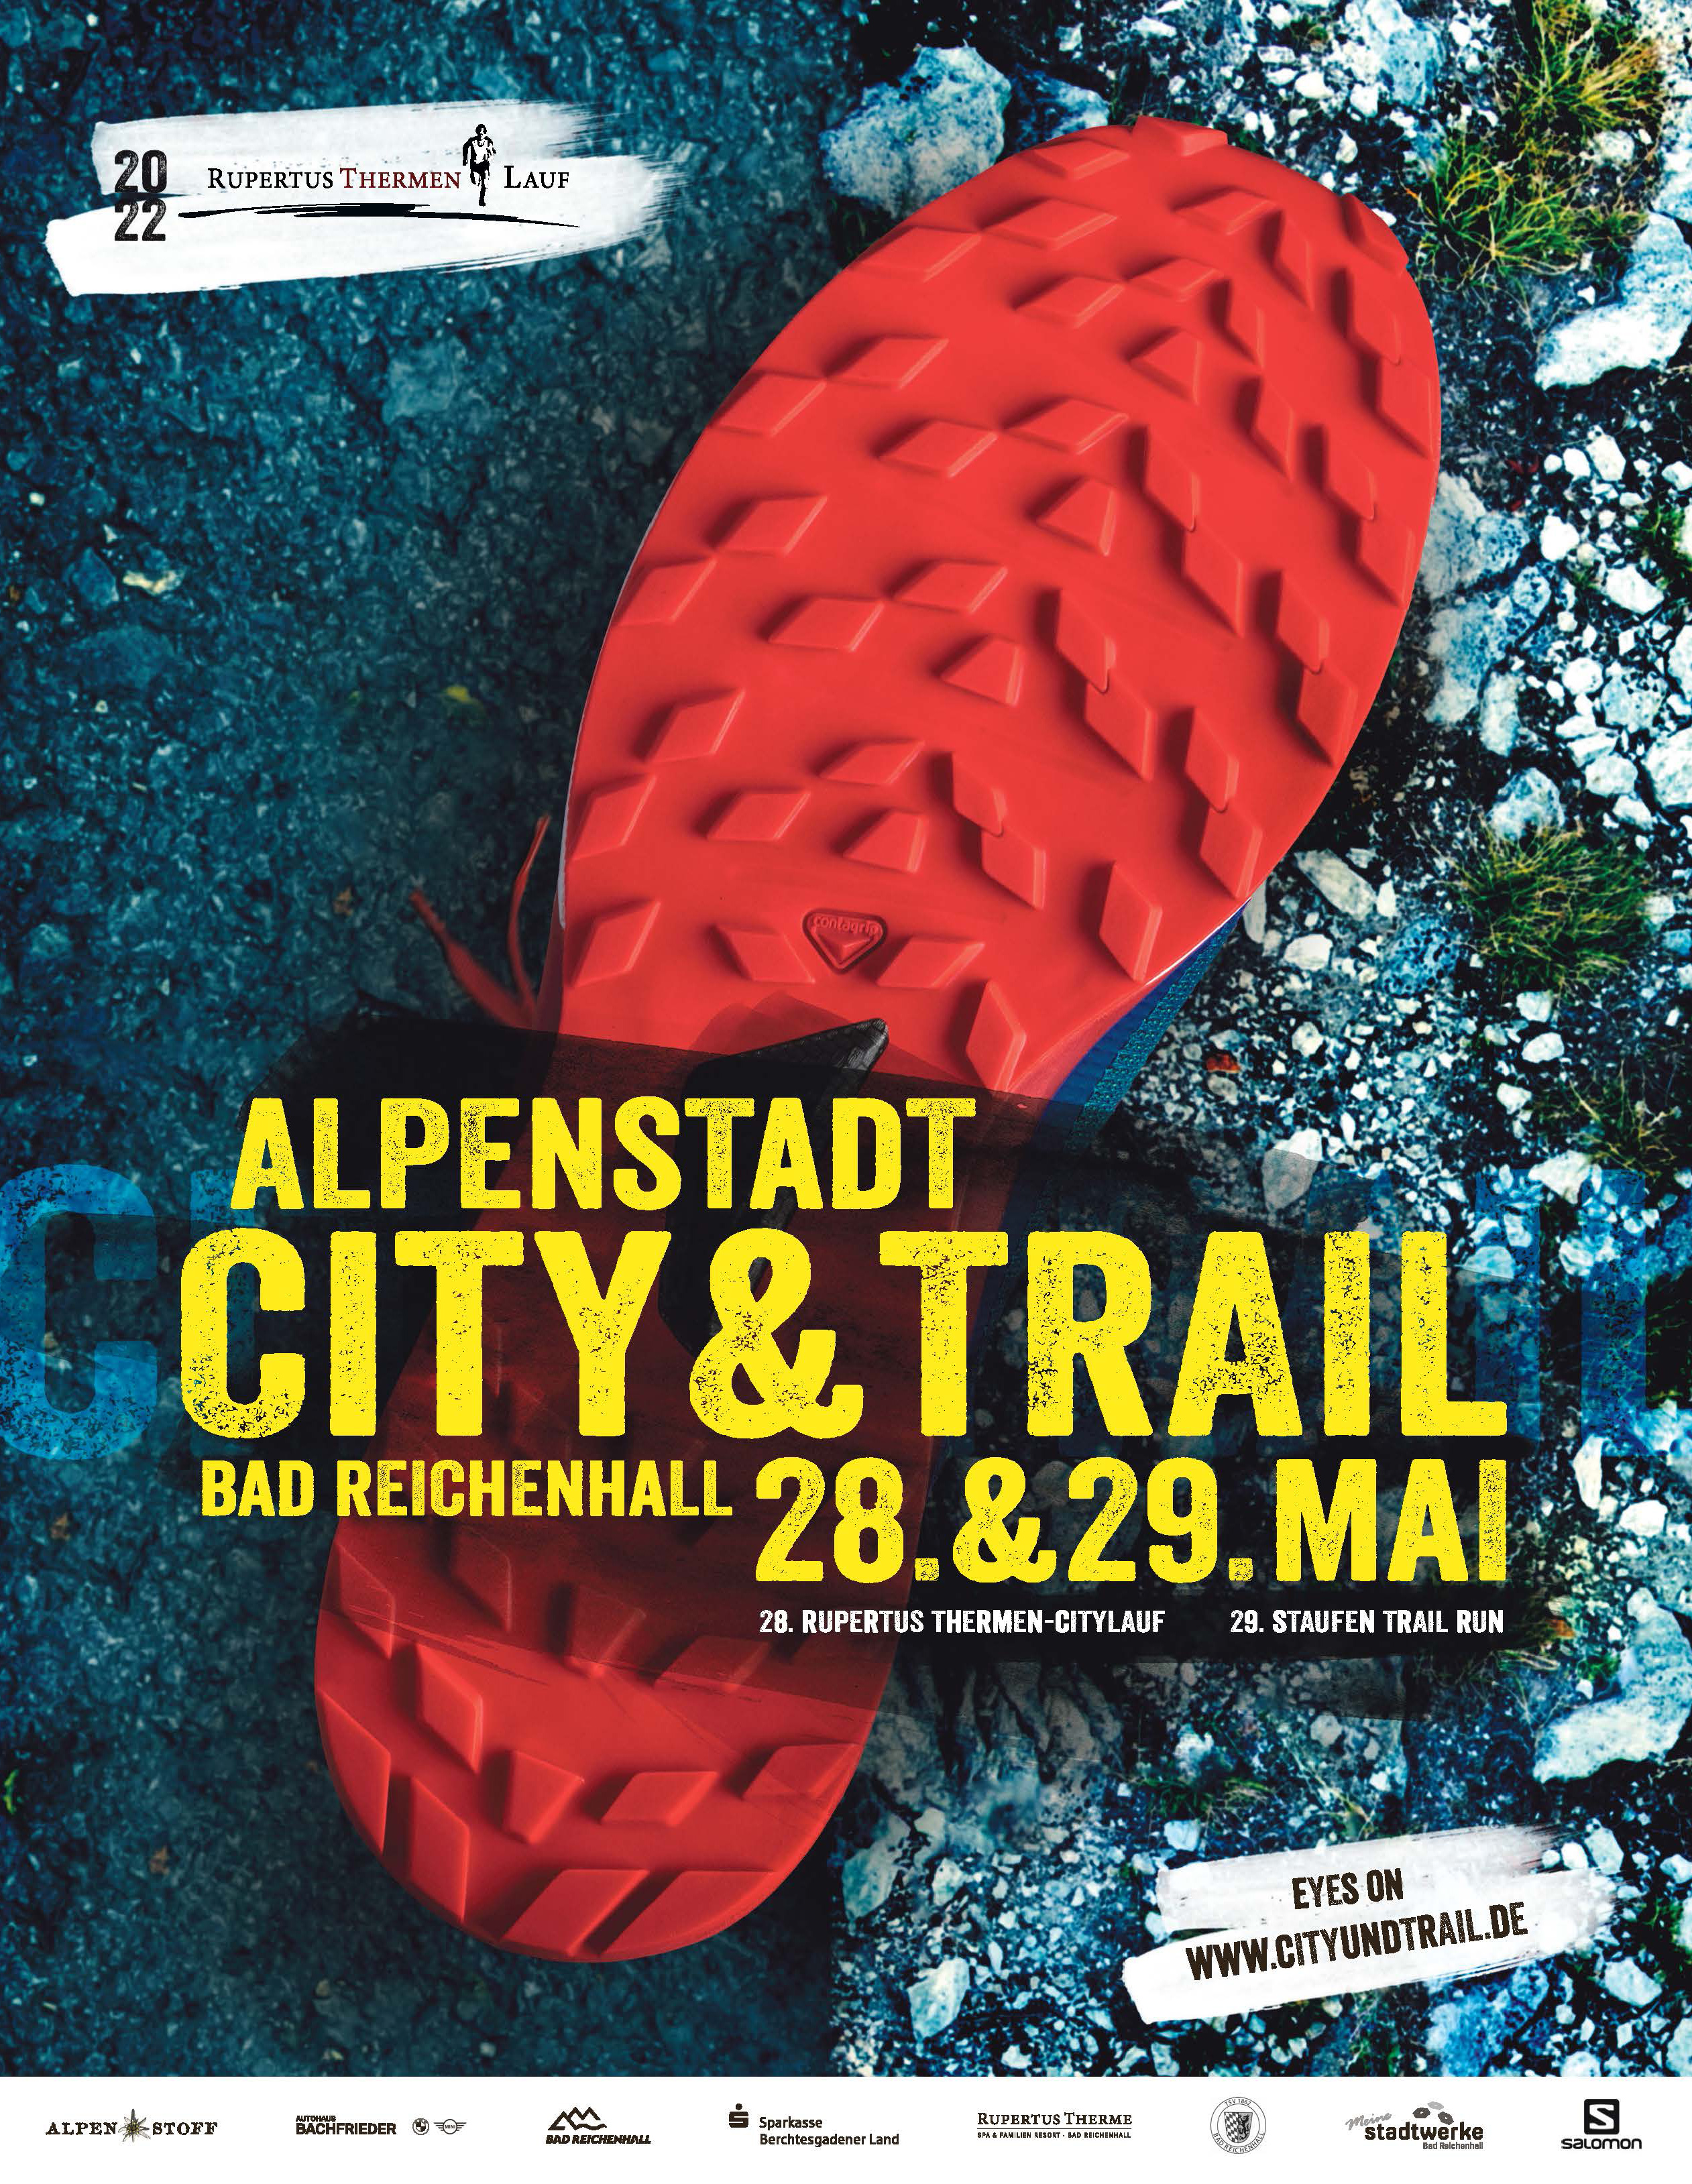 City & Trail in der Alpenstadt!